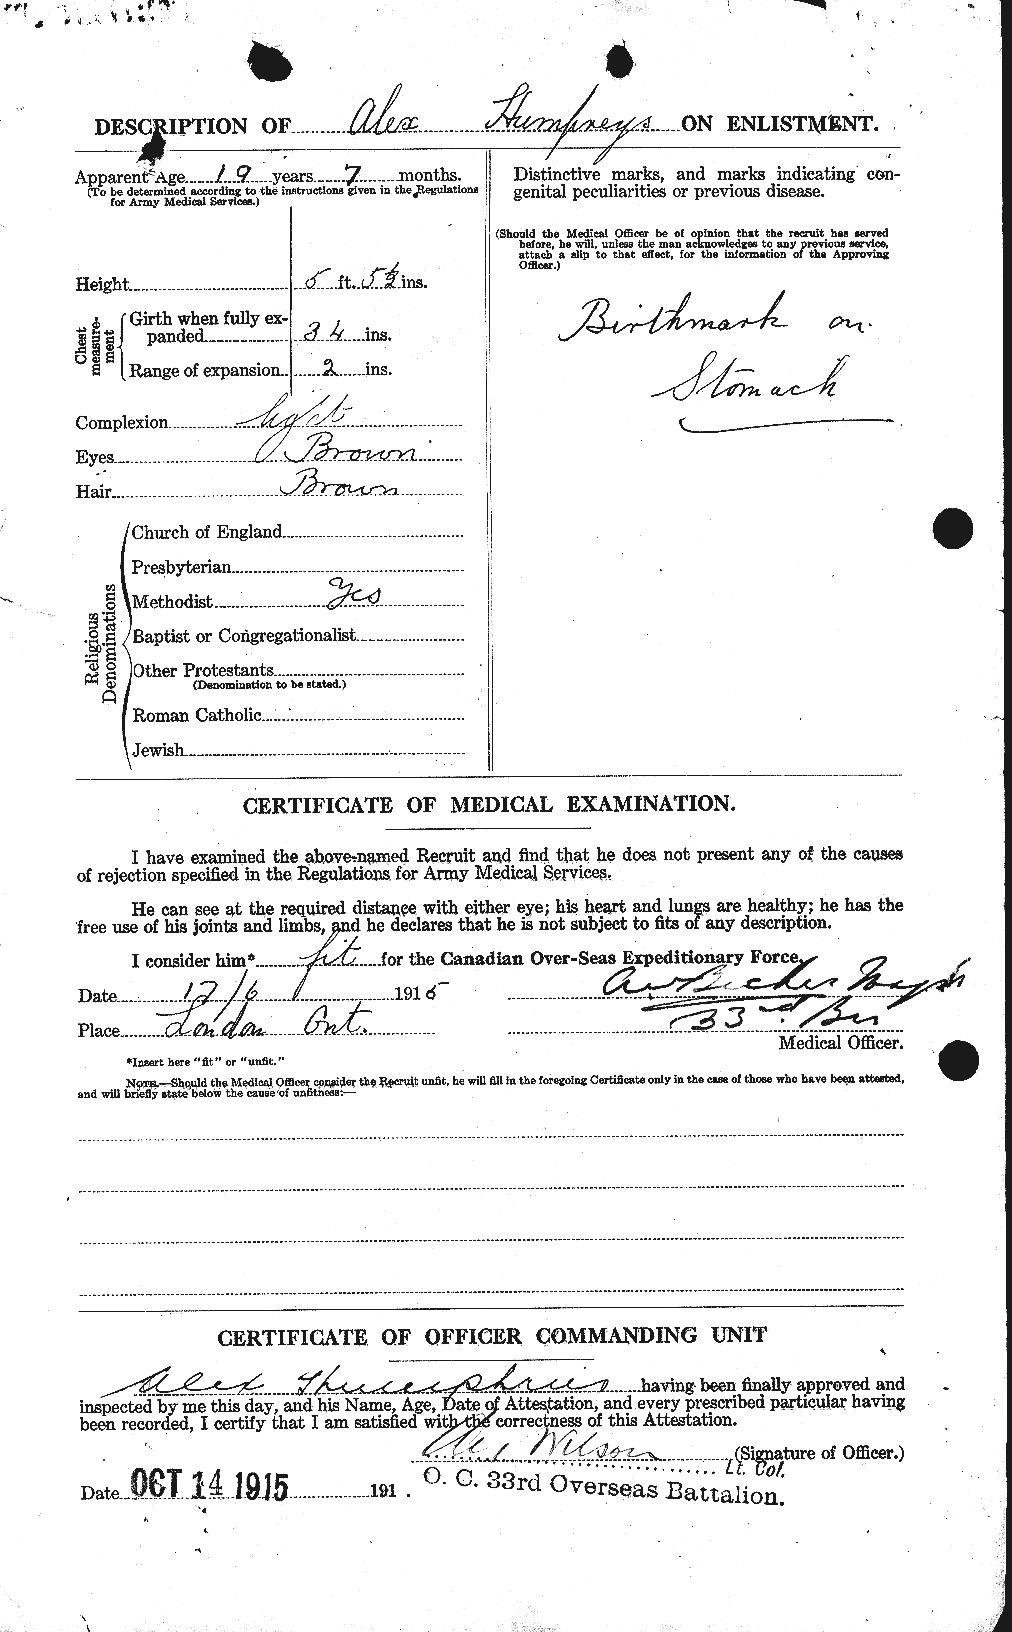 Dossiers du Personnel de la Première Guerre mondiale - CEC 409465b